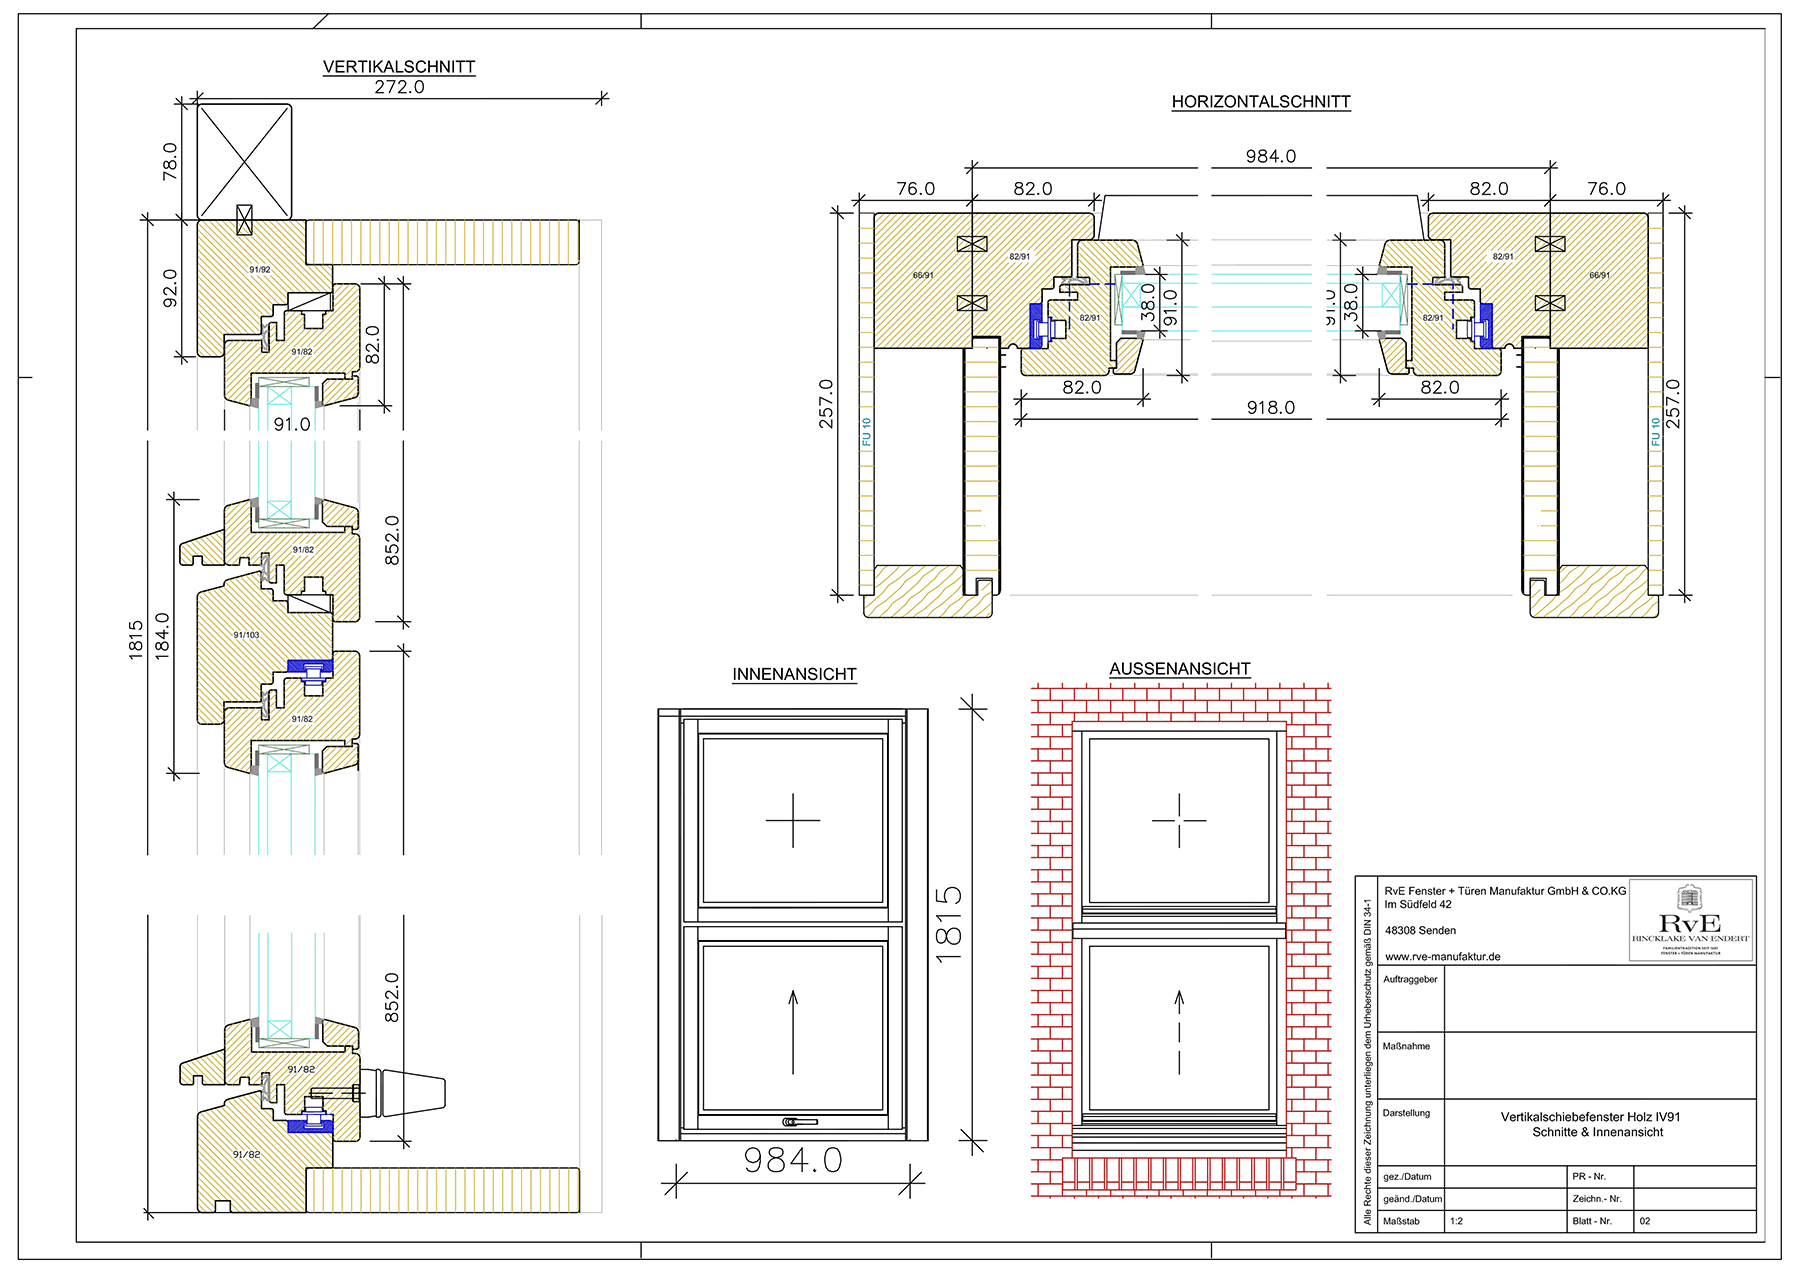 Vertikalschiebefenster Holz Technische Zeichnung